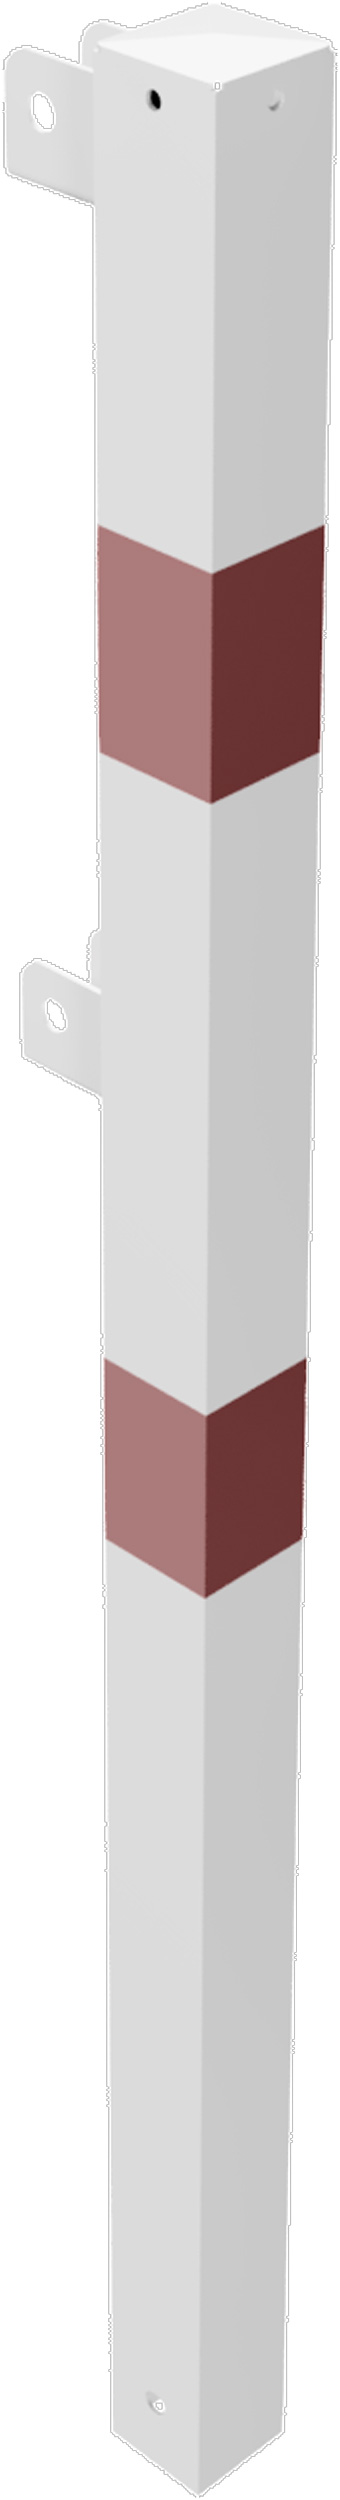 Schake Schutzgeländer Stahl Endpfosten OE 70 x 70 mm weiß | rot